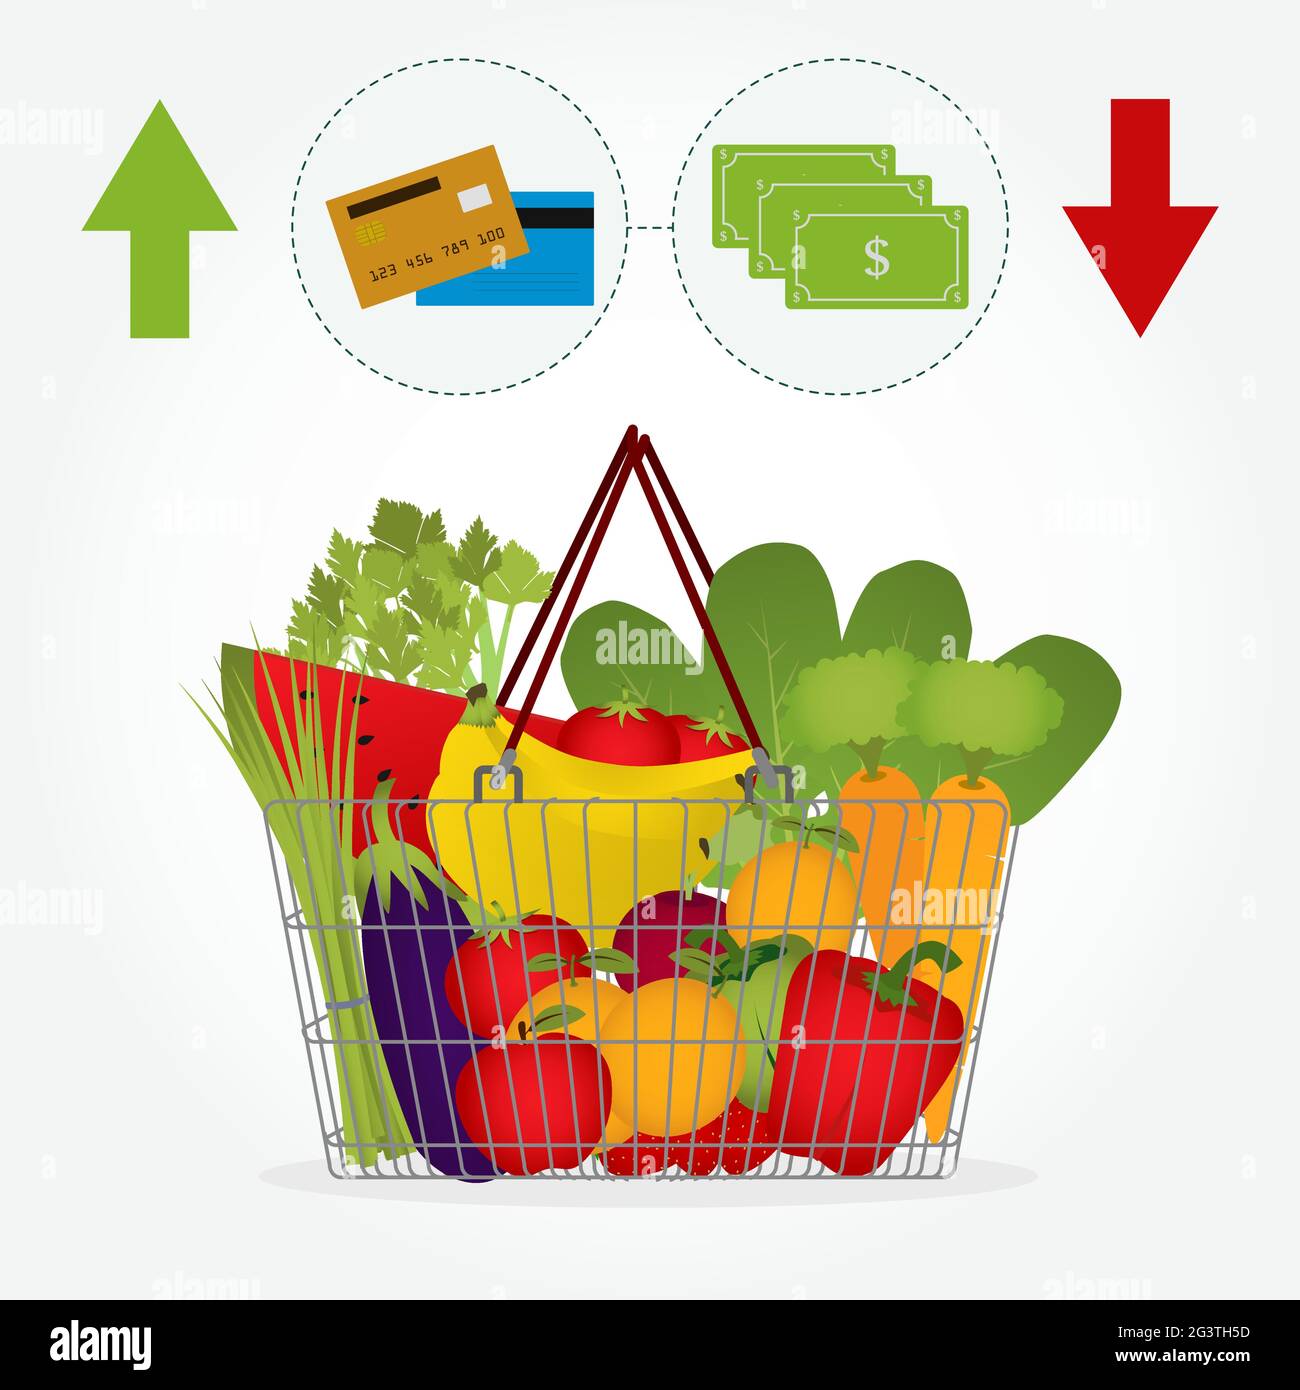 Cesta de supermercado llena de verduras y frutas como tomate, zanahorias, sandía, manzana, plátano, pimienta. Forma de pago: Anote el banco o la tarjeta de crédito Ilustración del Vector